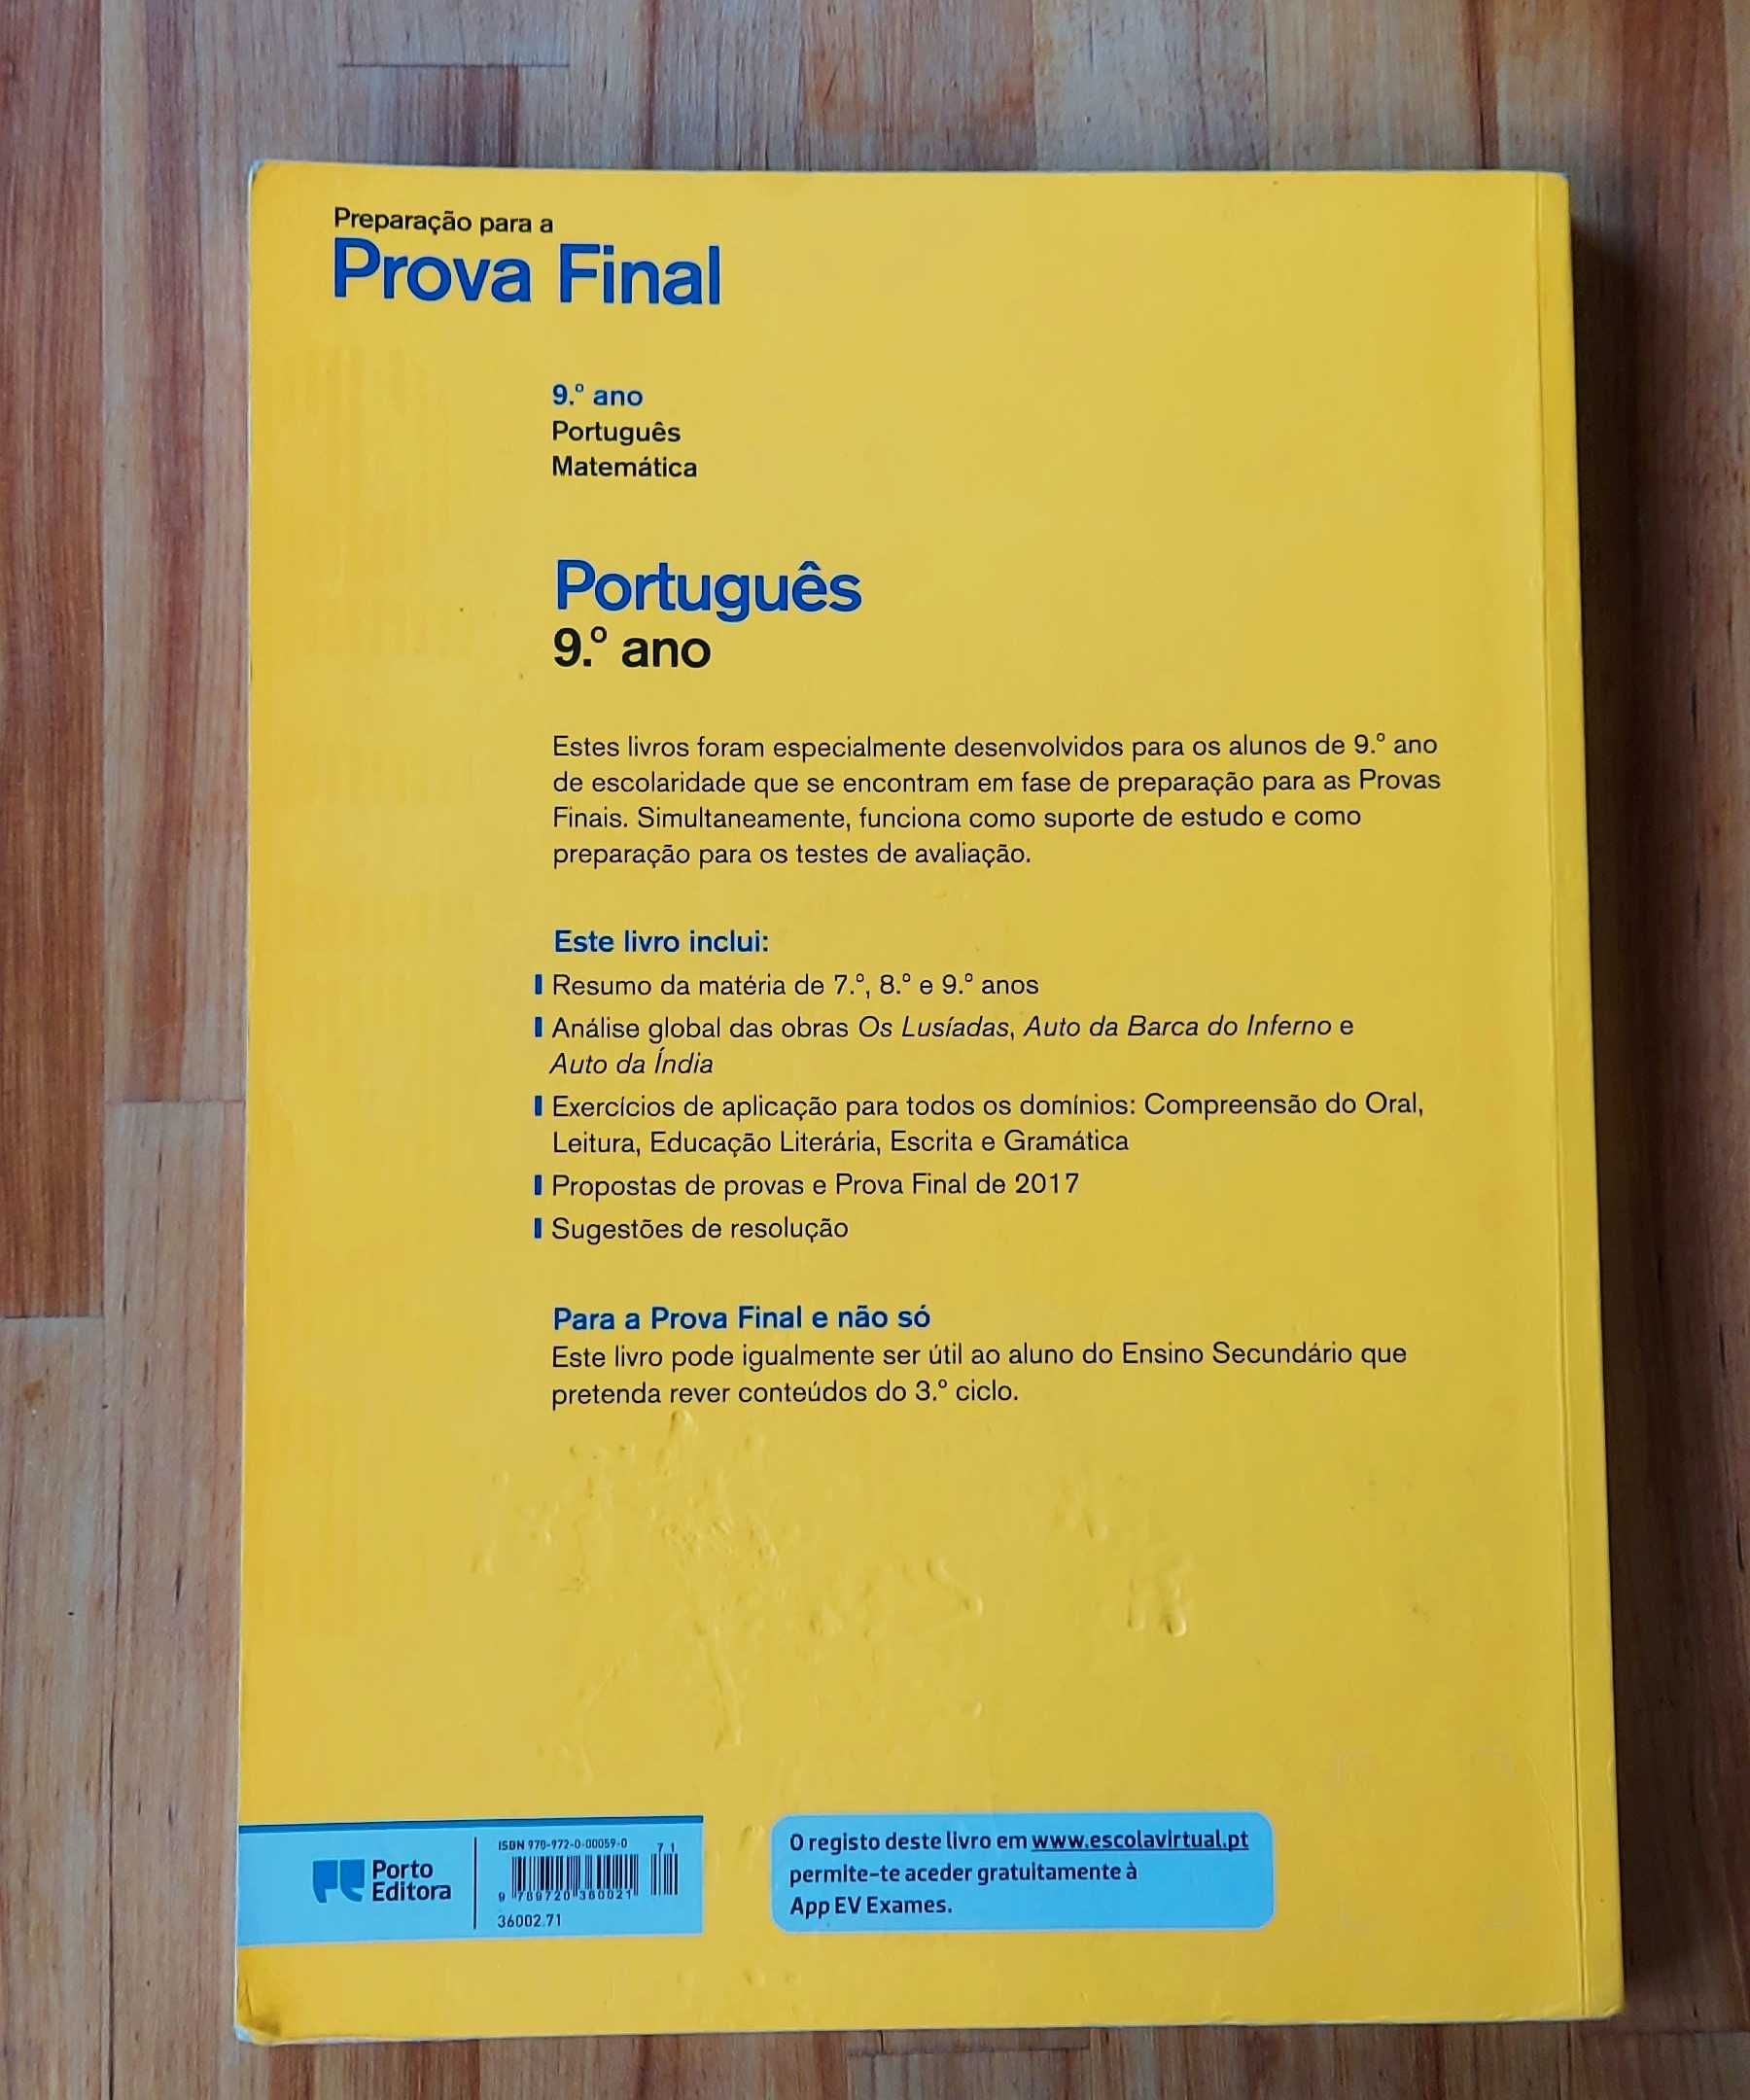 Livro de Preparação para Prova Final de Português de 9º ano